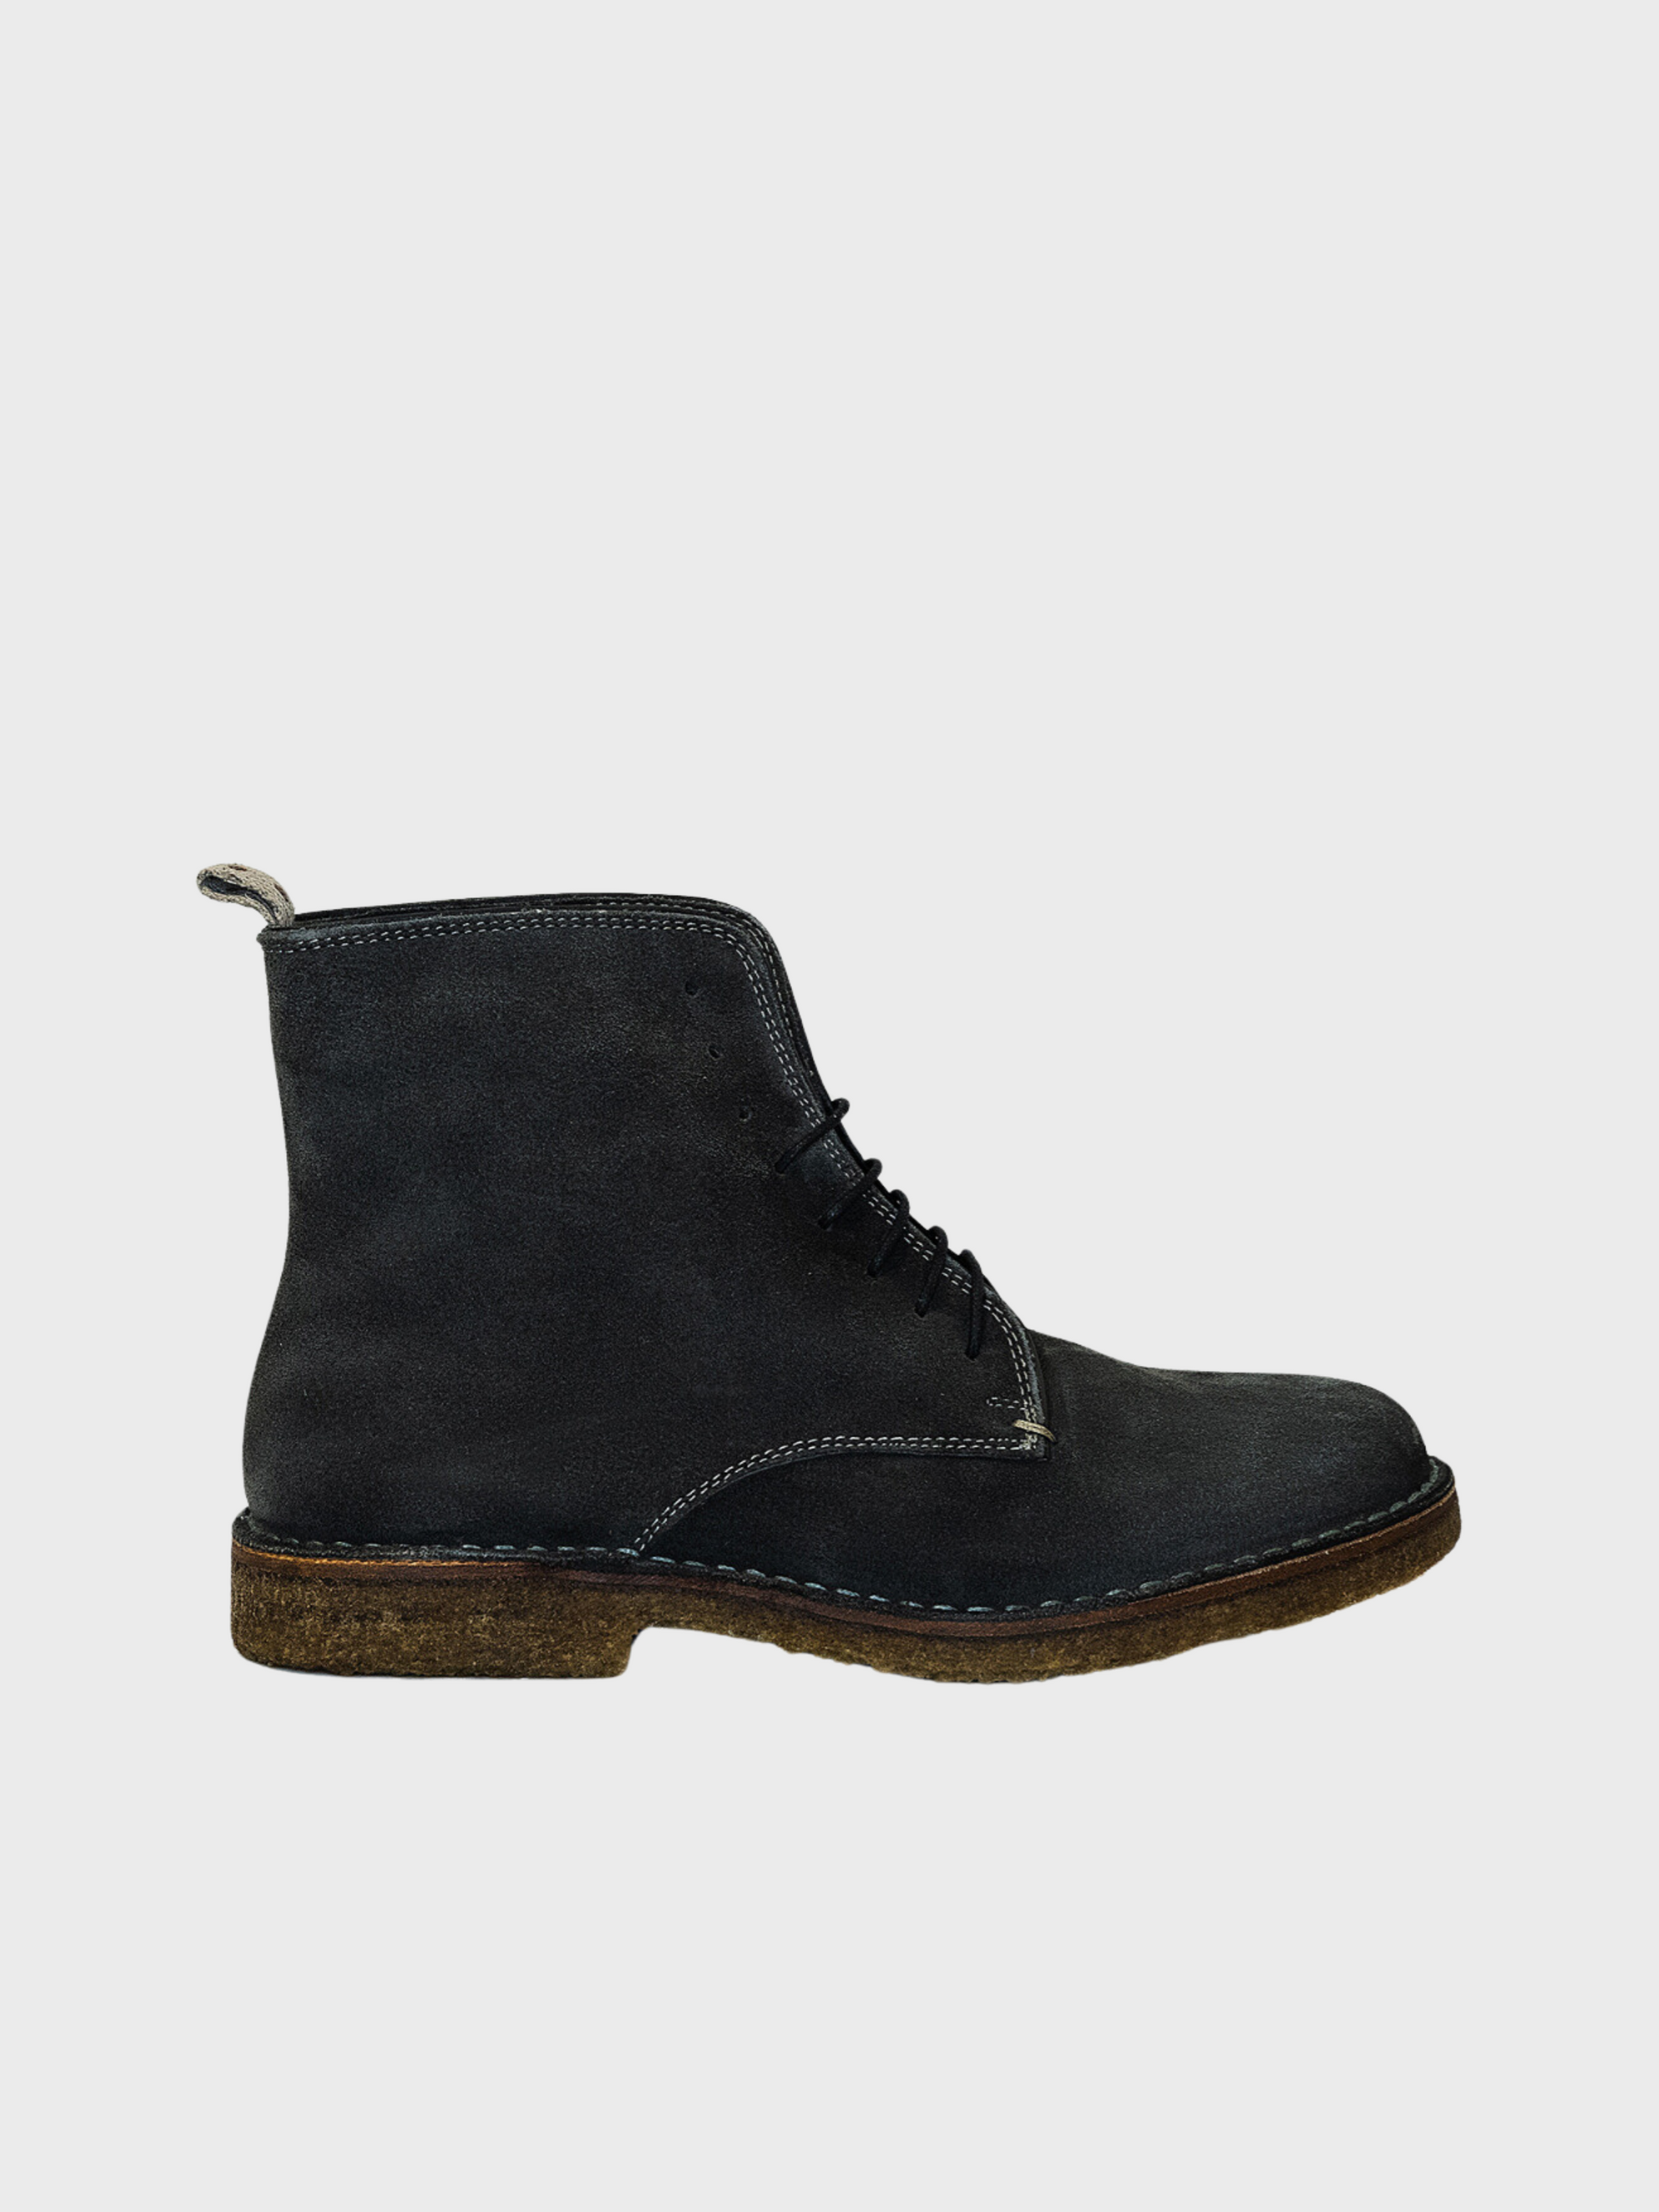 Astorflex CORE-Bootflex 001 Boot-695-Men&#39;s Shoes-7-Yaletown-Vancouver-Surrey-Canada